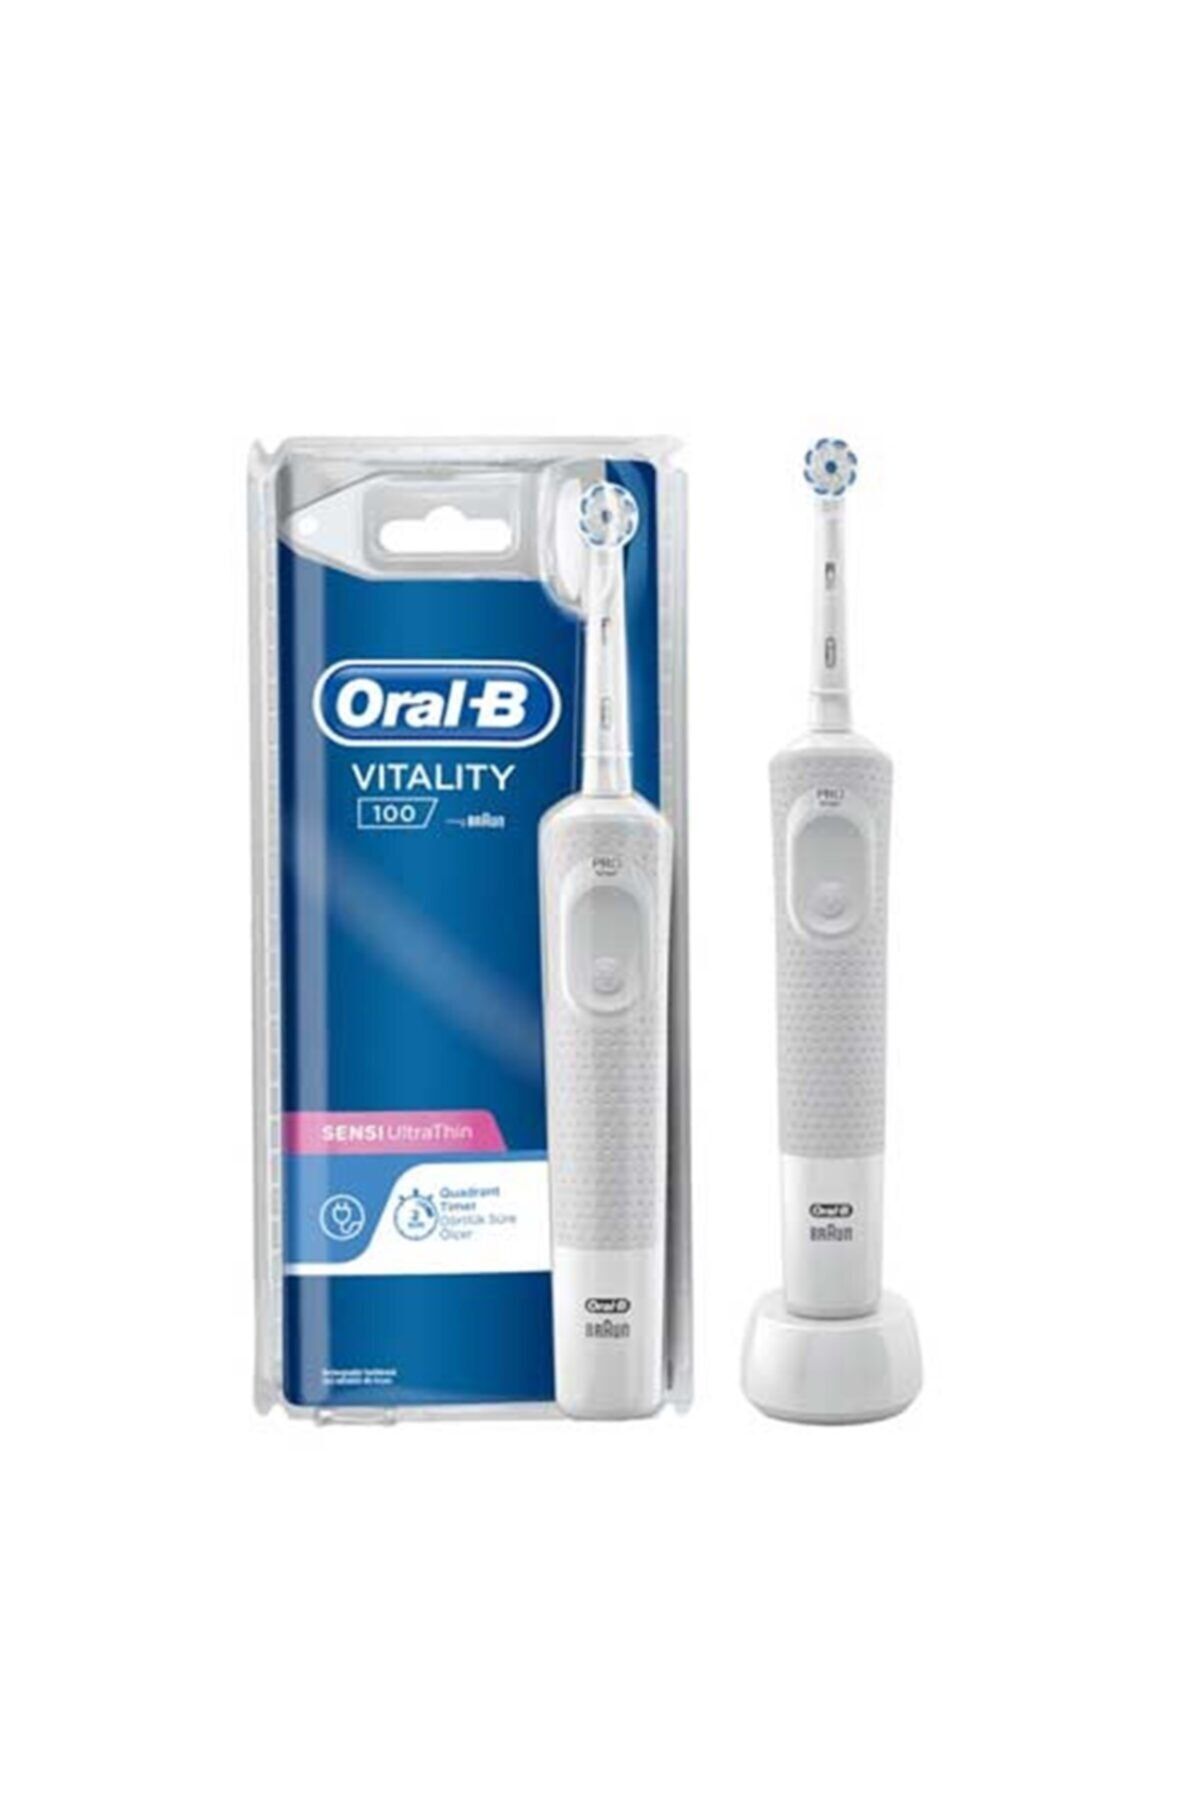 Oral-B Vıtalıty 100 Sensı Ultra Thin Dörtlük Süre Ölçer